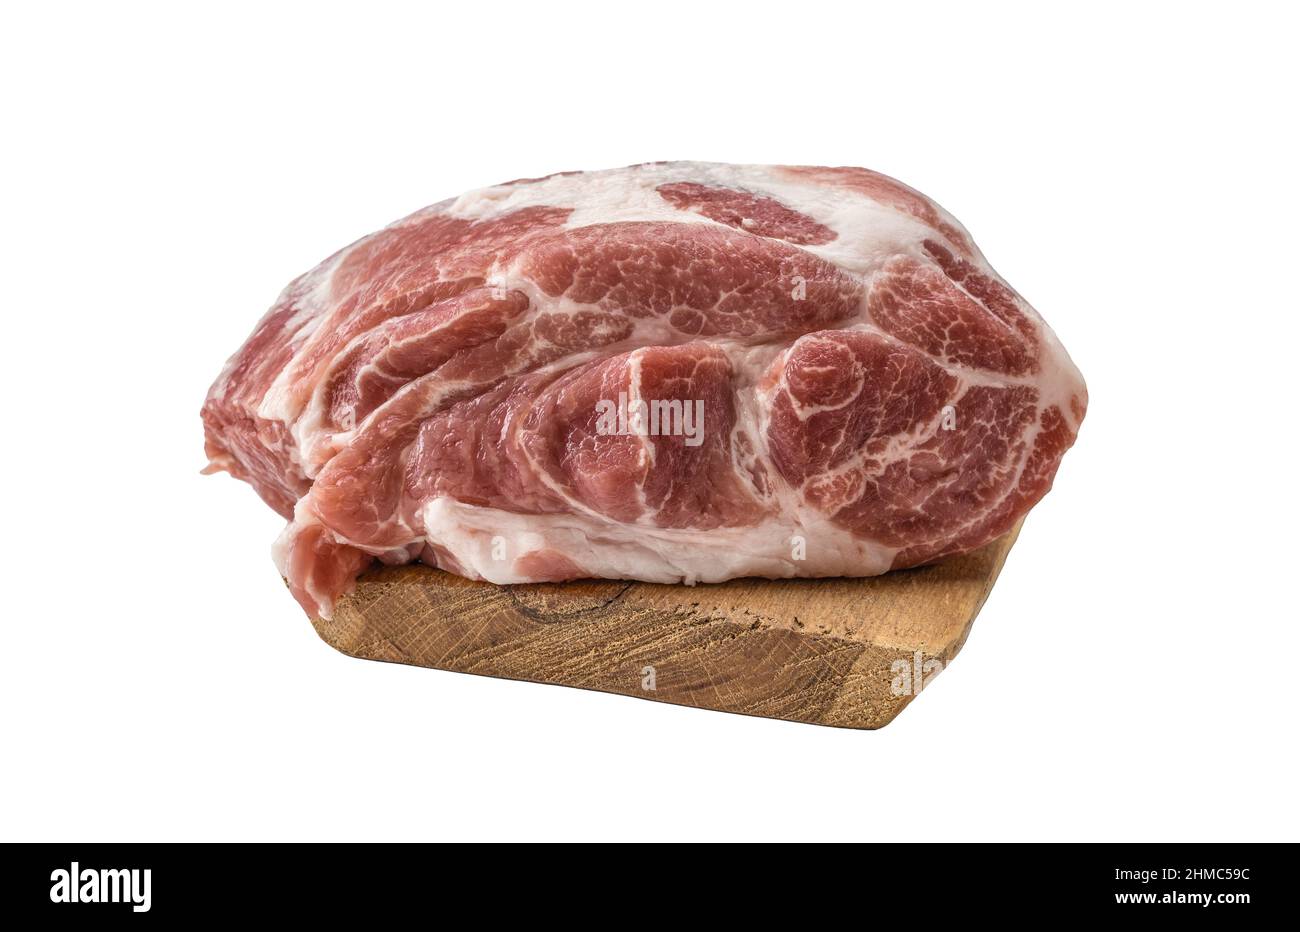 Frisches Schweinefleisch, großes Stück rohes Schweinefleisch auf Holzschneidebrett. Bild für Metzgerei, Metzgerei. Rohes Schweinefleisch Hals oder Bauch. Frisches Fleisch beim Schneiden Stockfoto